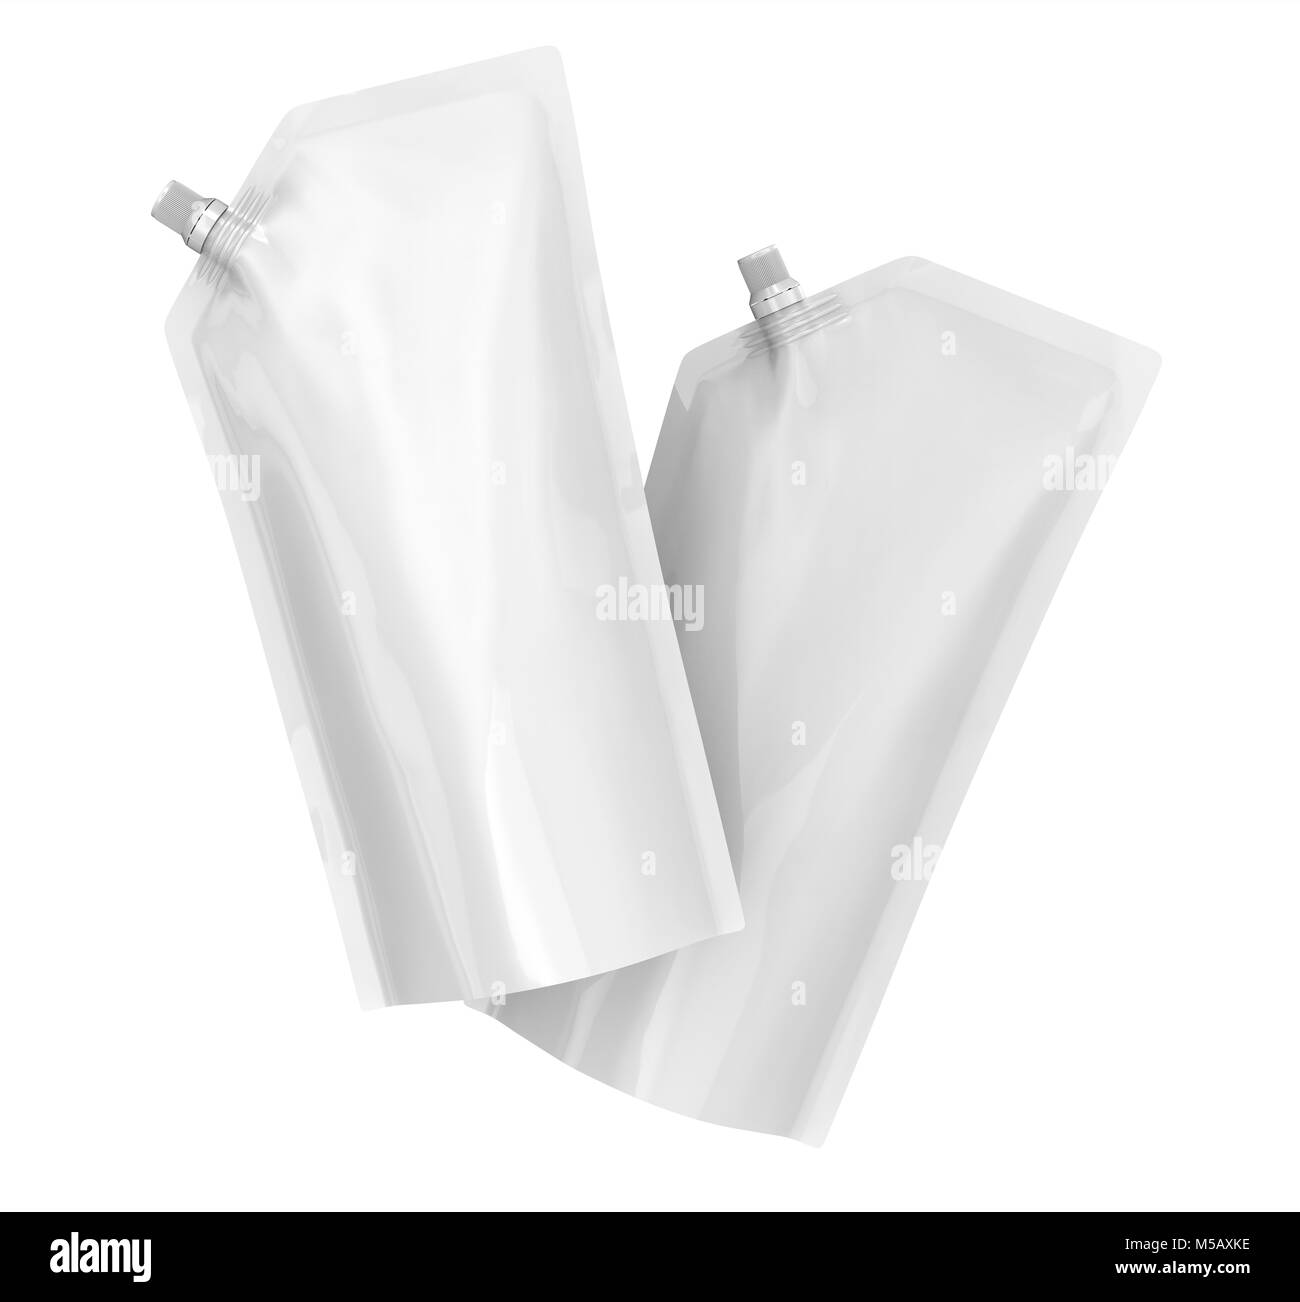 Waschmittel refill Paket, 3d-render Beuteltasche mockup mit Deckel, die in der Luft schweben eingestellt Stockfoto